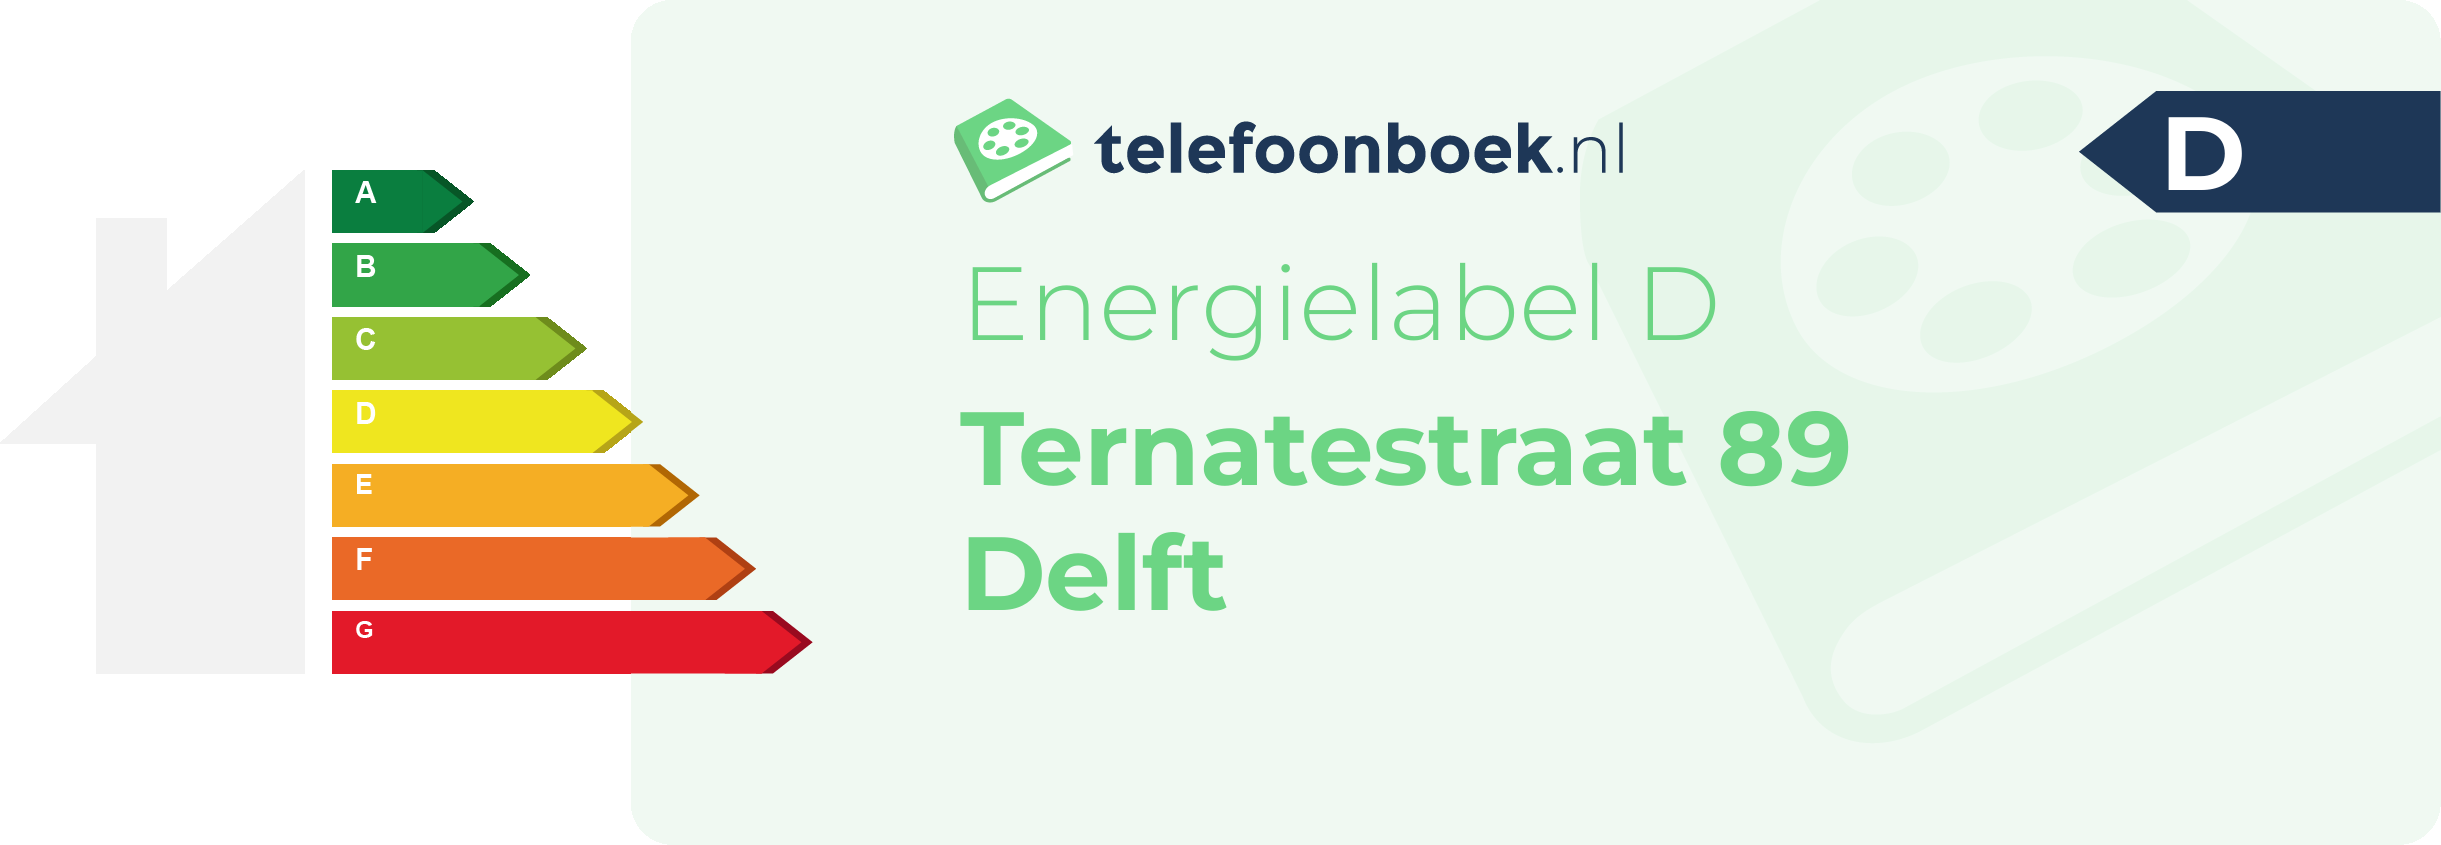 Energielabel Ternatestraat 89 Delft